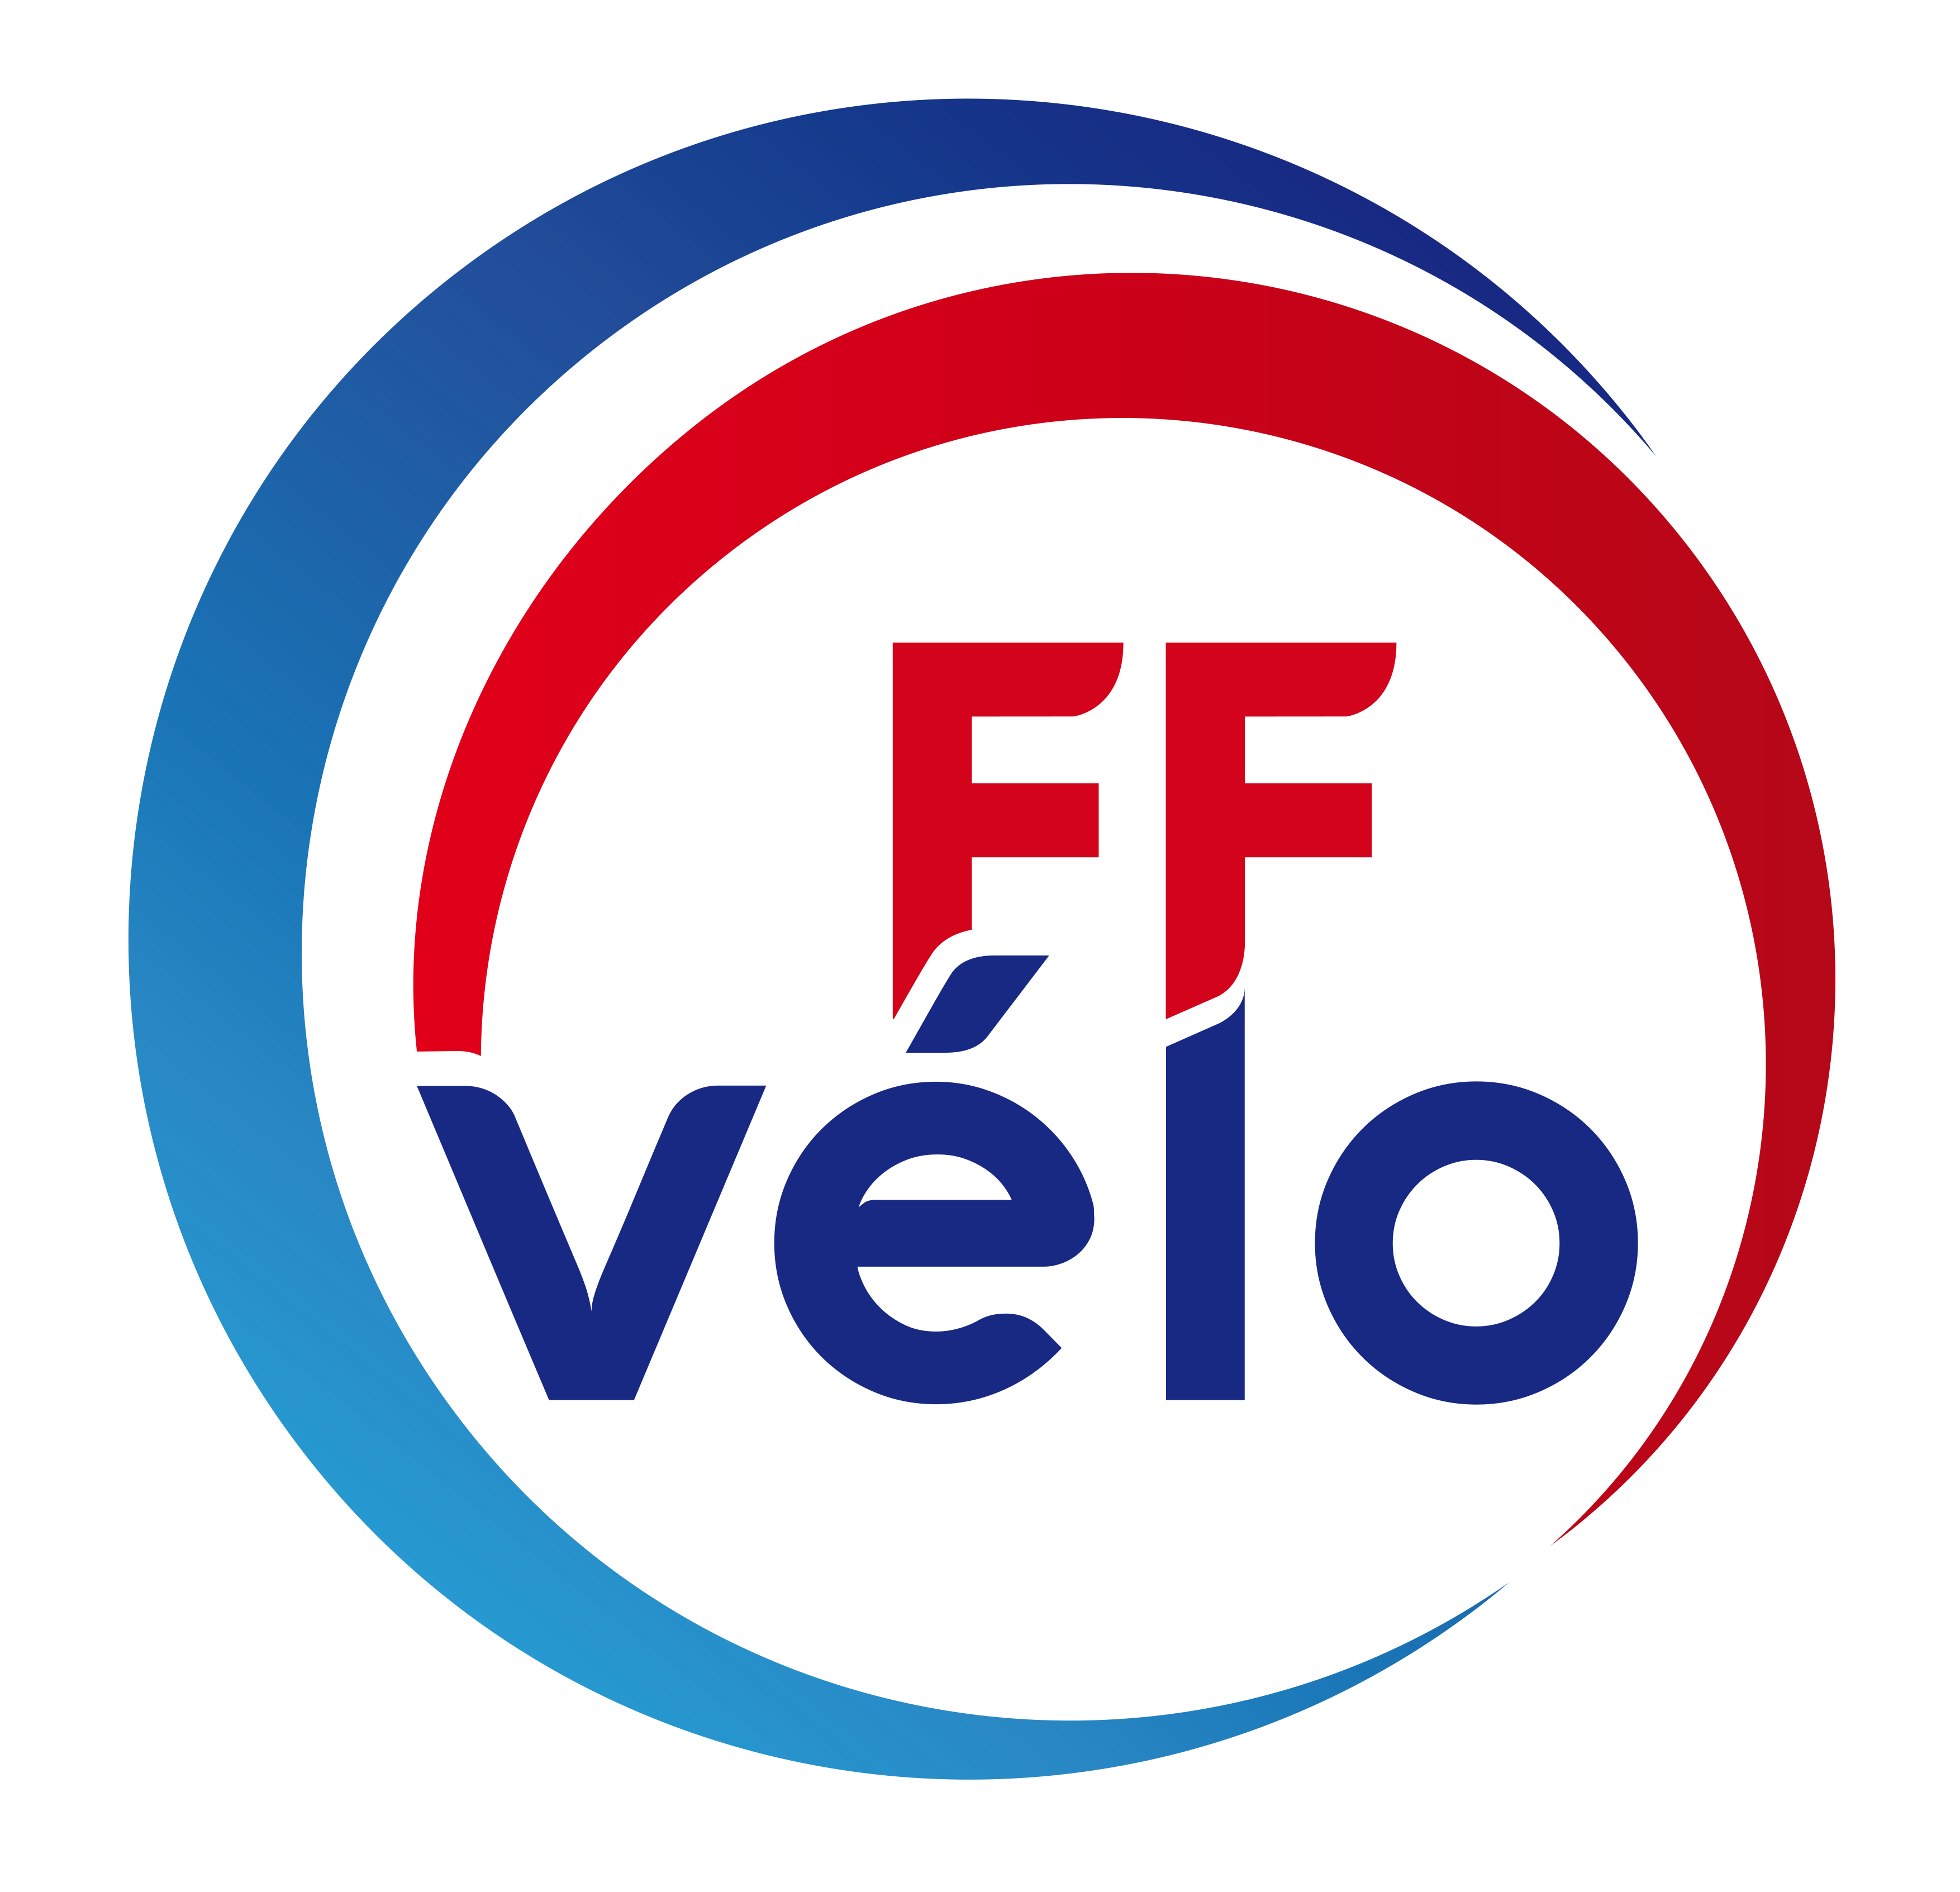 www.ffvelo.fr